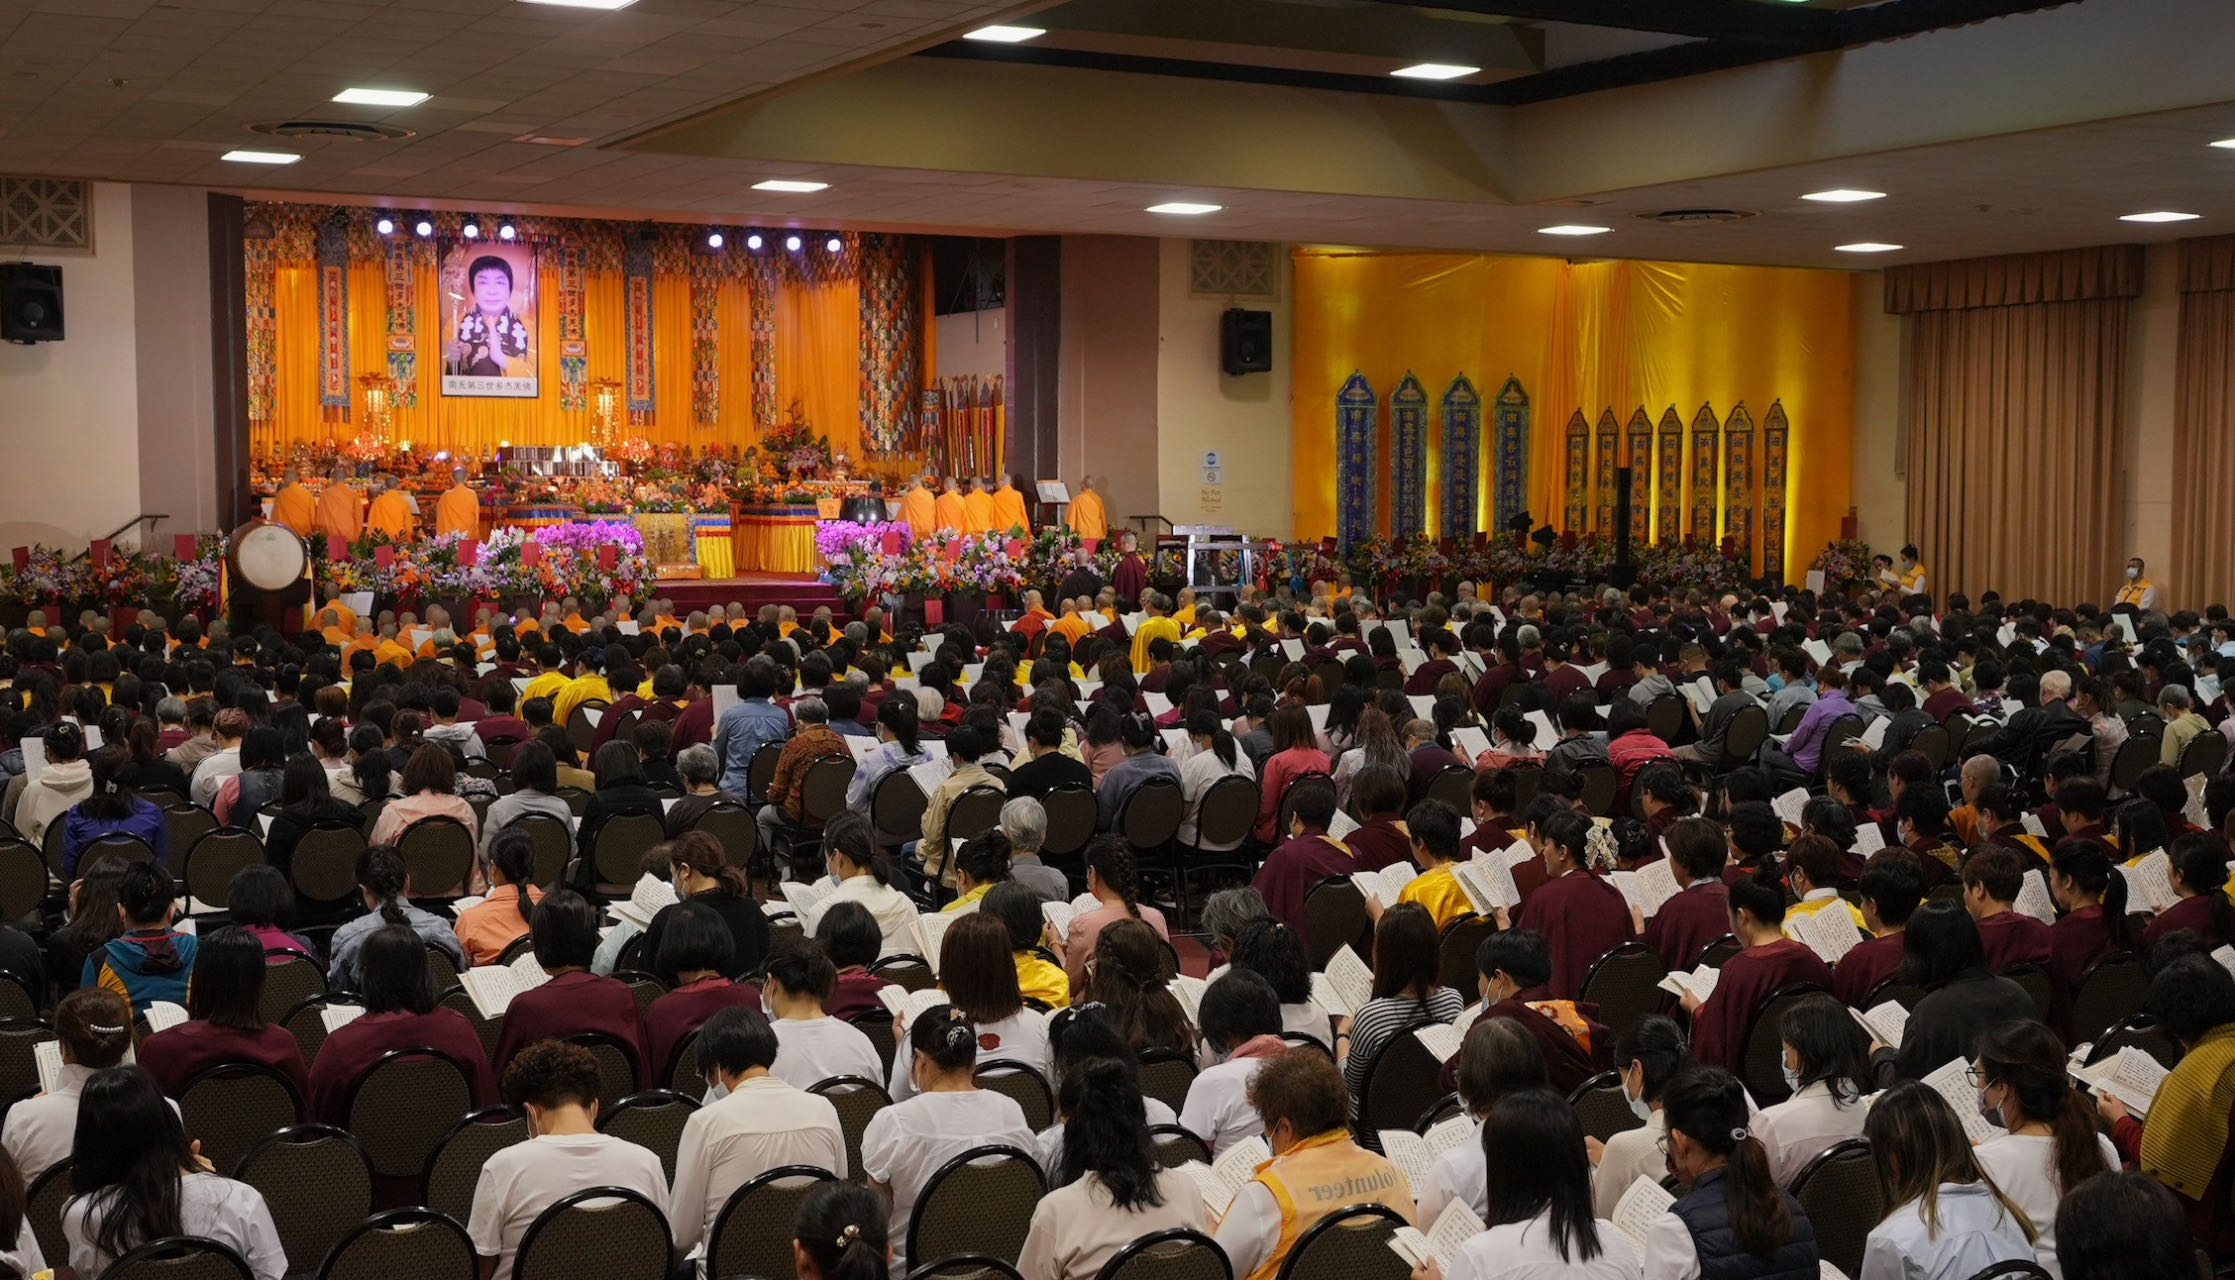 恭迎南無第三世多杰羌佛佛誕暨《南無第三世多杰羌佛經藏總集》法會，世界各地的佛弟子們一千多人齊聚祝賀。